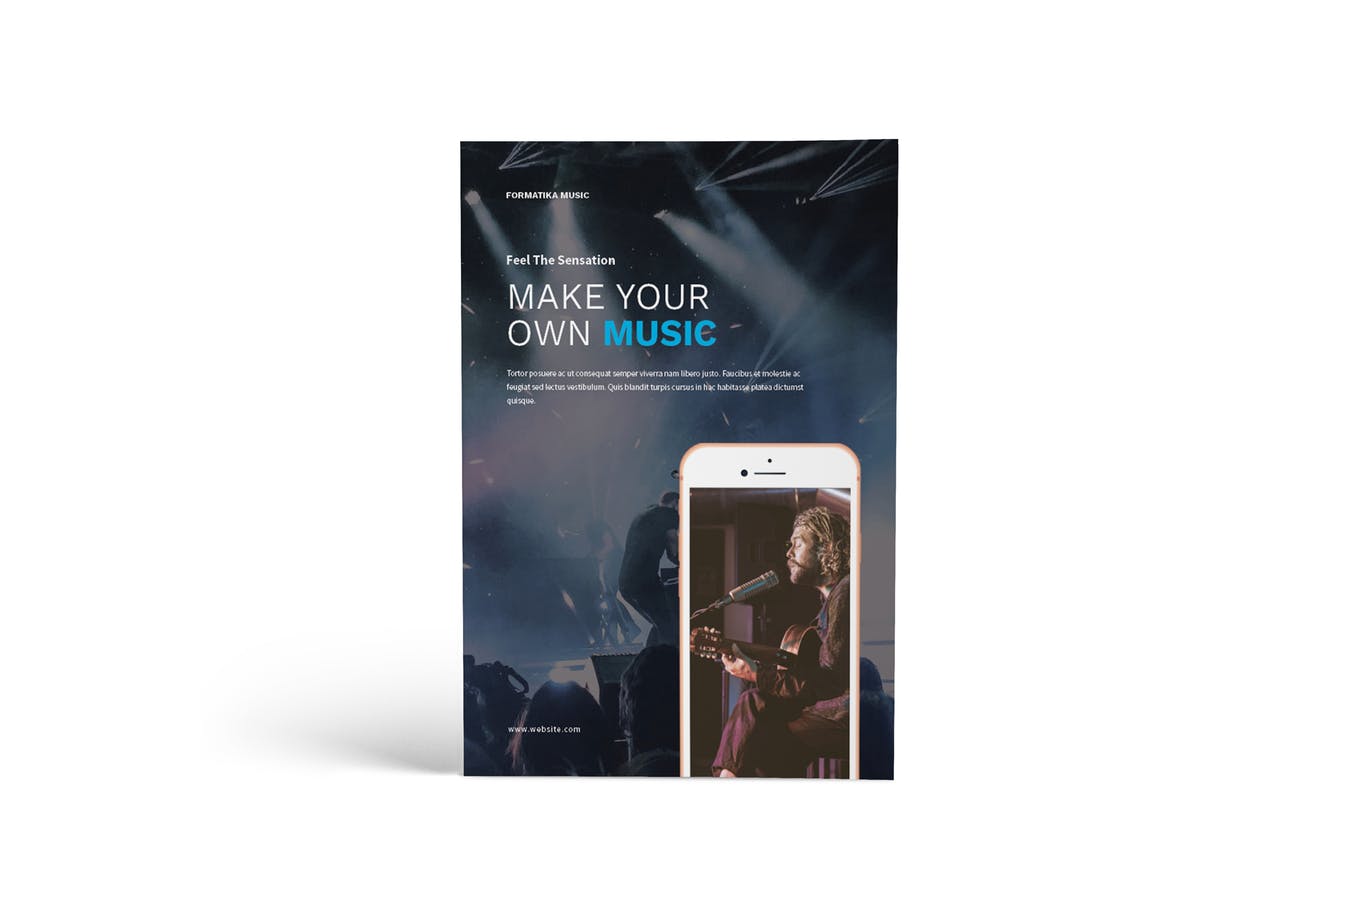 音乐主题A4规格画册/宣传册设计模板 Music A4 Brochure Template插图